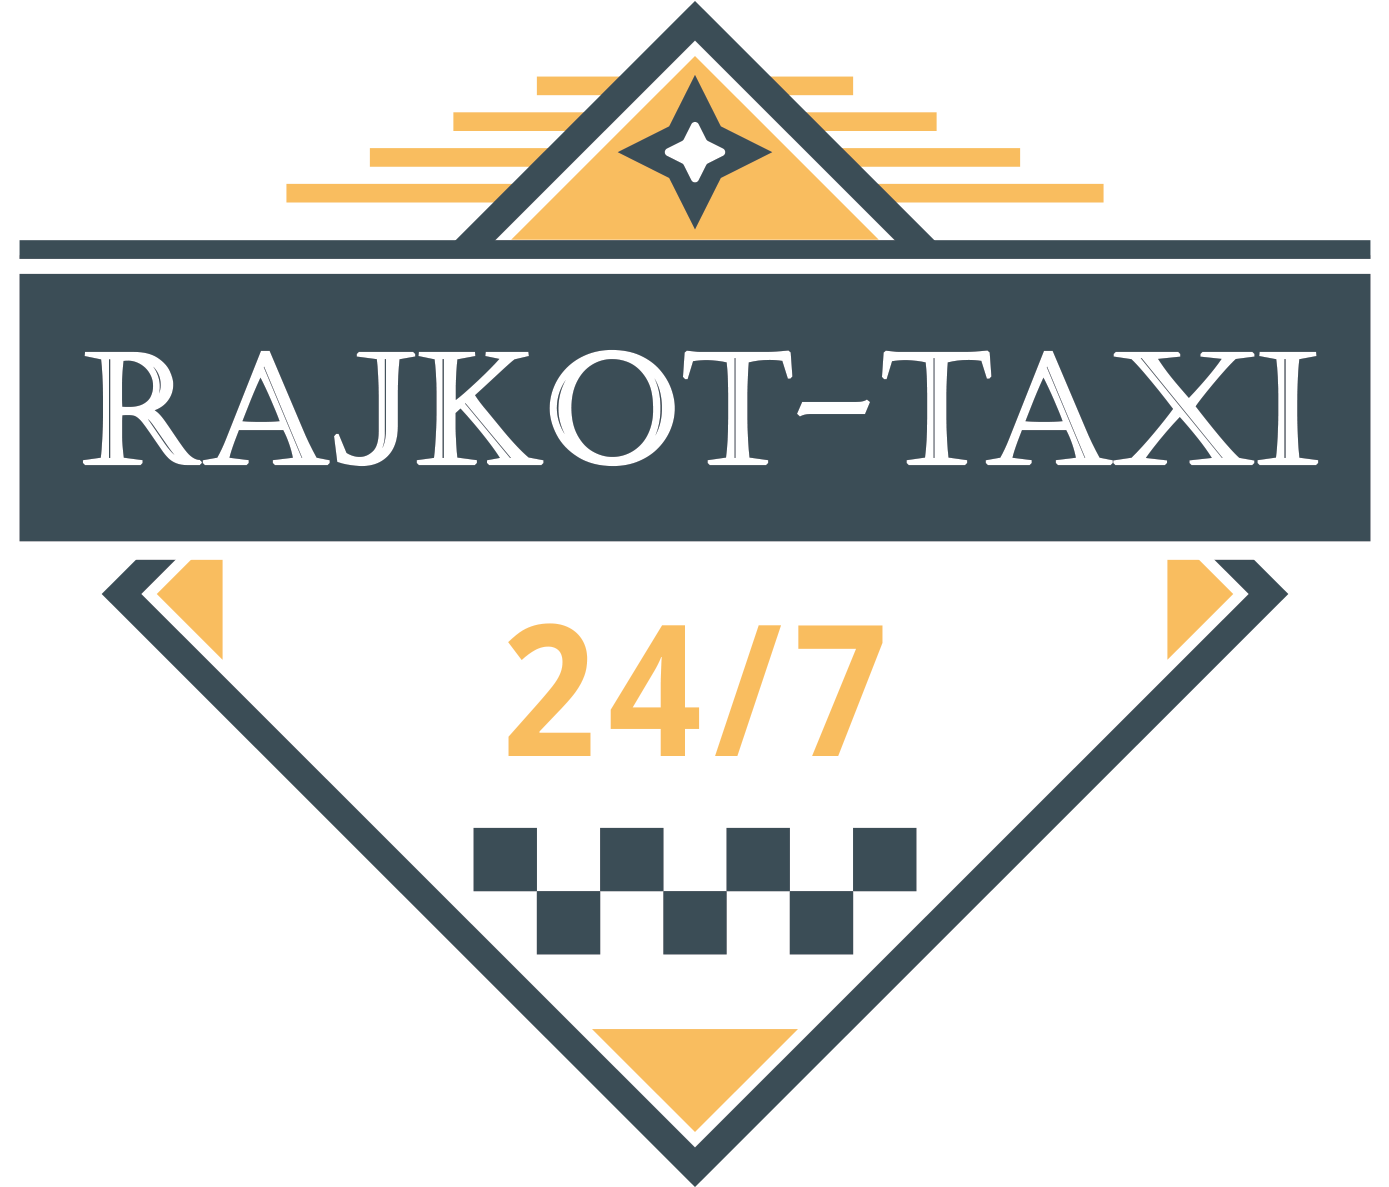 A Logo For A Taxi